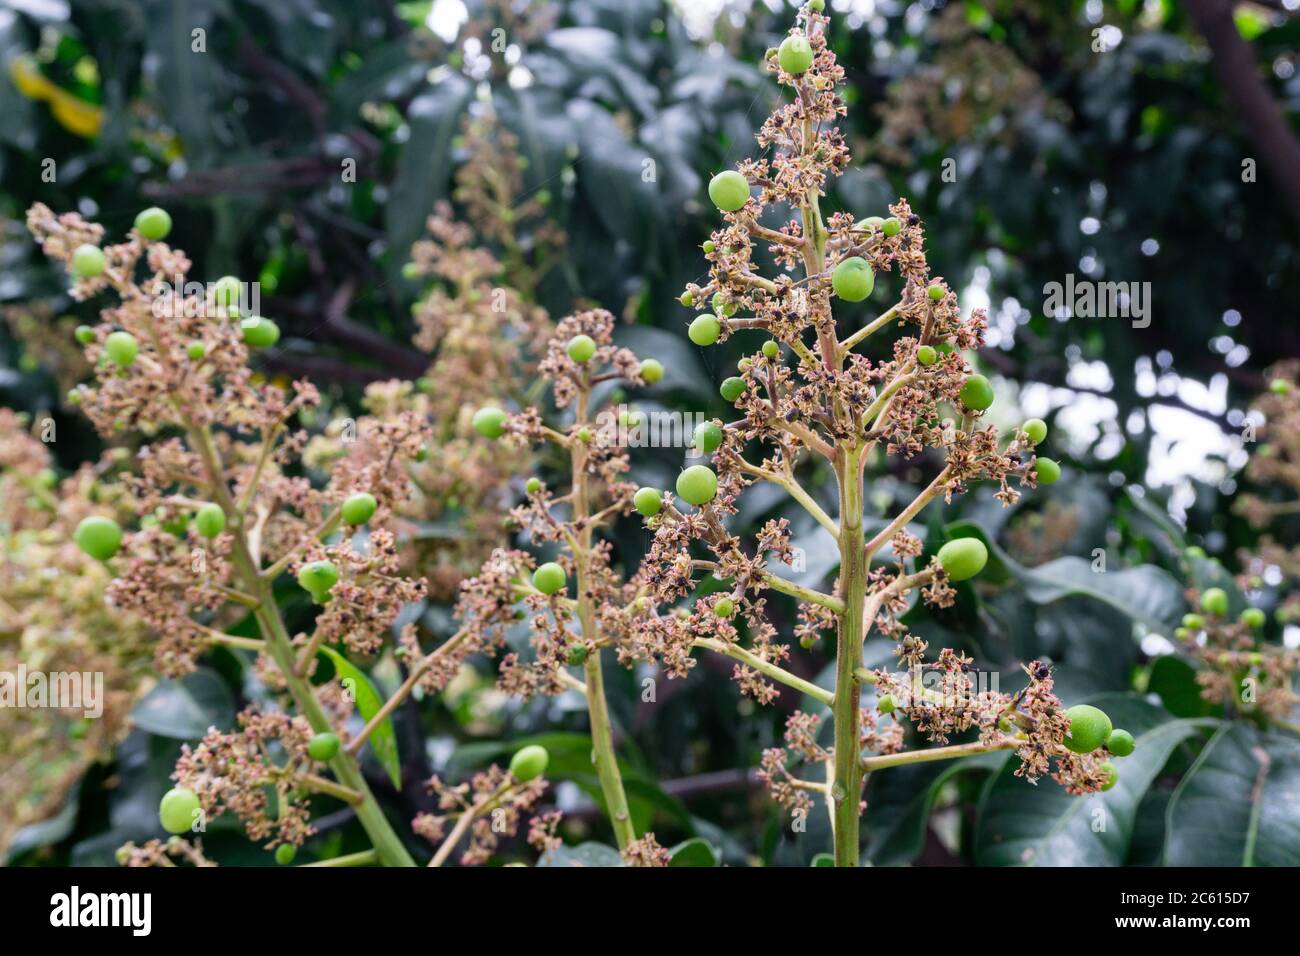 Mangifera indica comunemente noto come mango. Un colpo di albero portarotelli con piccoli manghi e i suoi fiori. Foto Stock